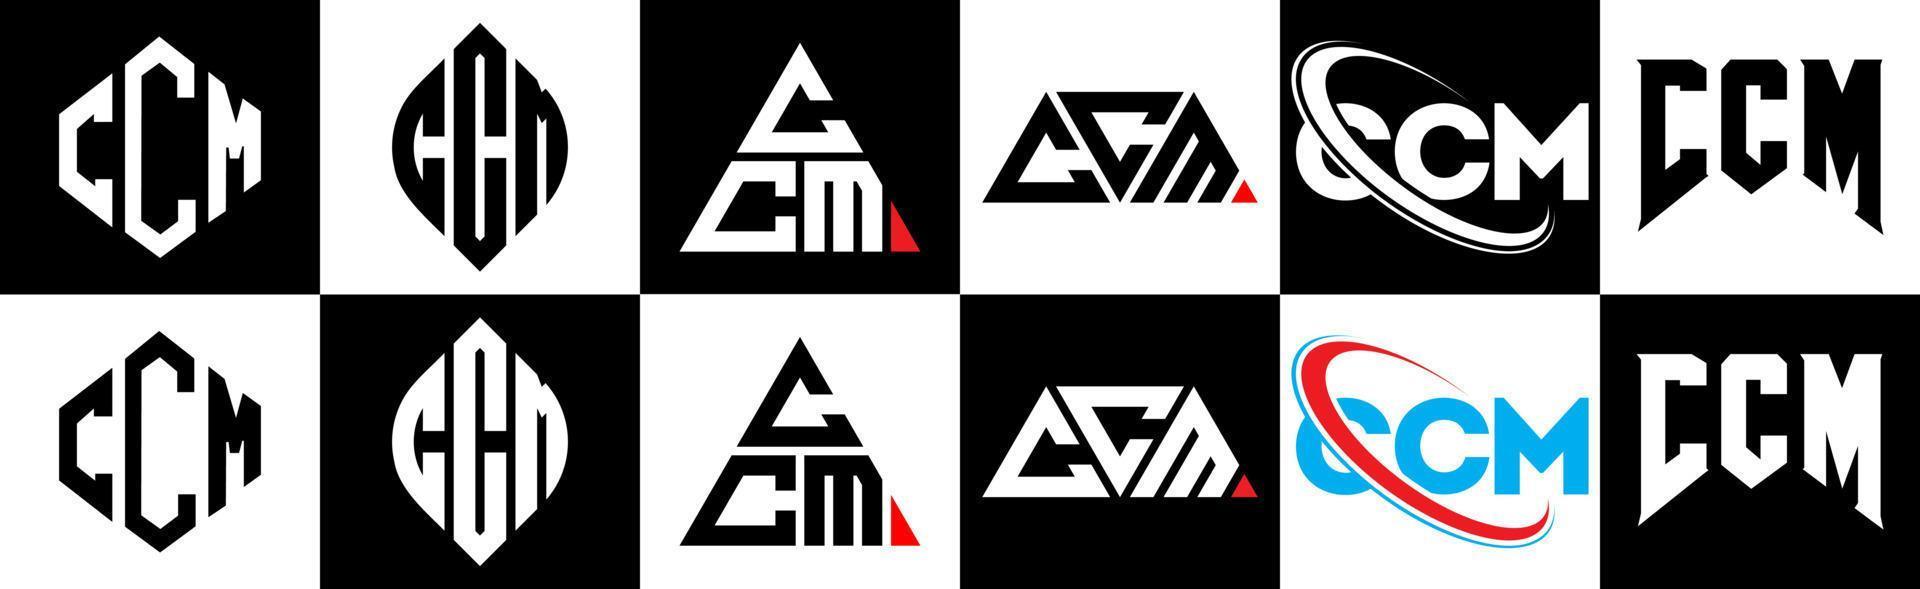 création de logo de lettre ccm dans six styles. ccm polygone, cercle, triangle, hexagone, style plat et simple avec logo de lettre de variation de couleur noir et blanc dans un plan de travail. logo ccm minimaliste et classique vecteur